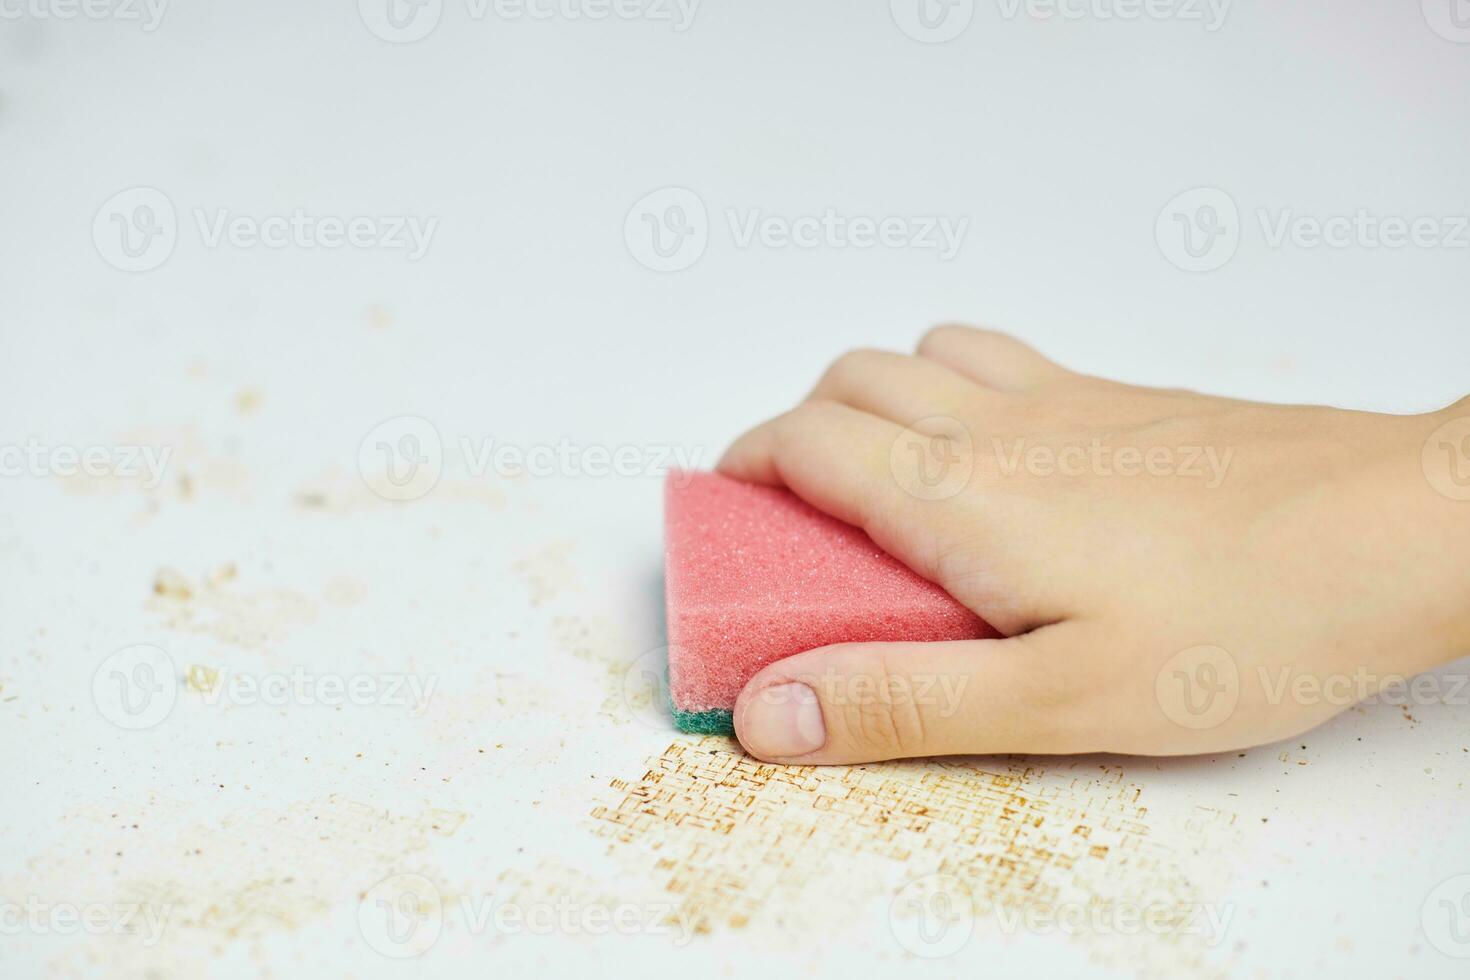 la esponja en la mano de la mujer elimina la suciedad, las migas de pan y las sobras. limpiar la mesa de la cocina. tareas del hogar foto